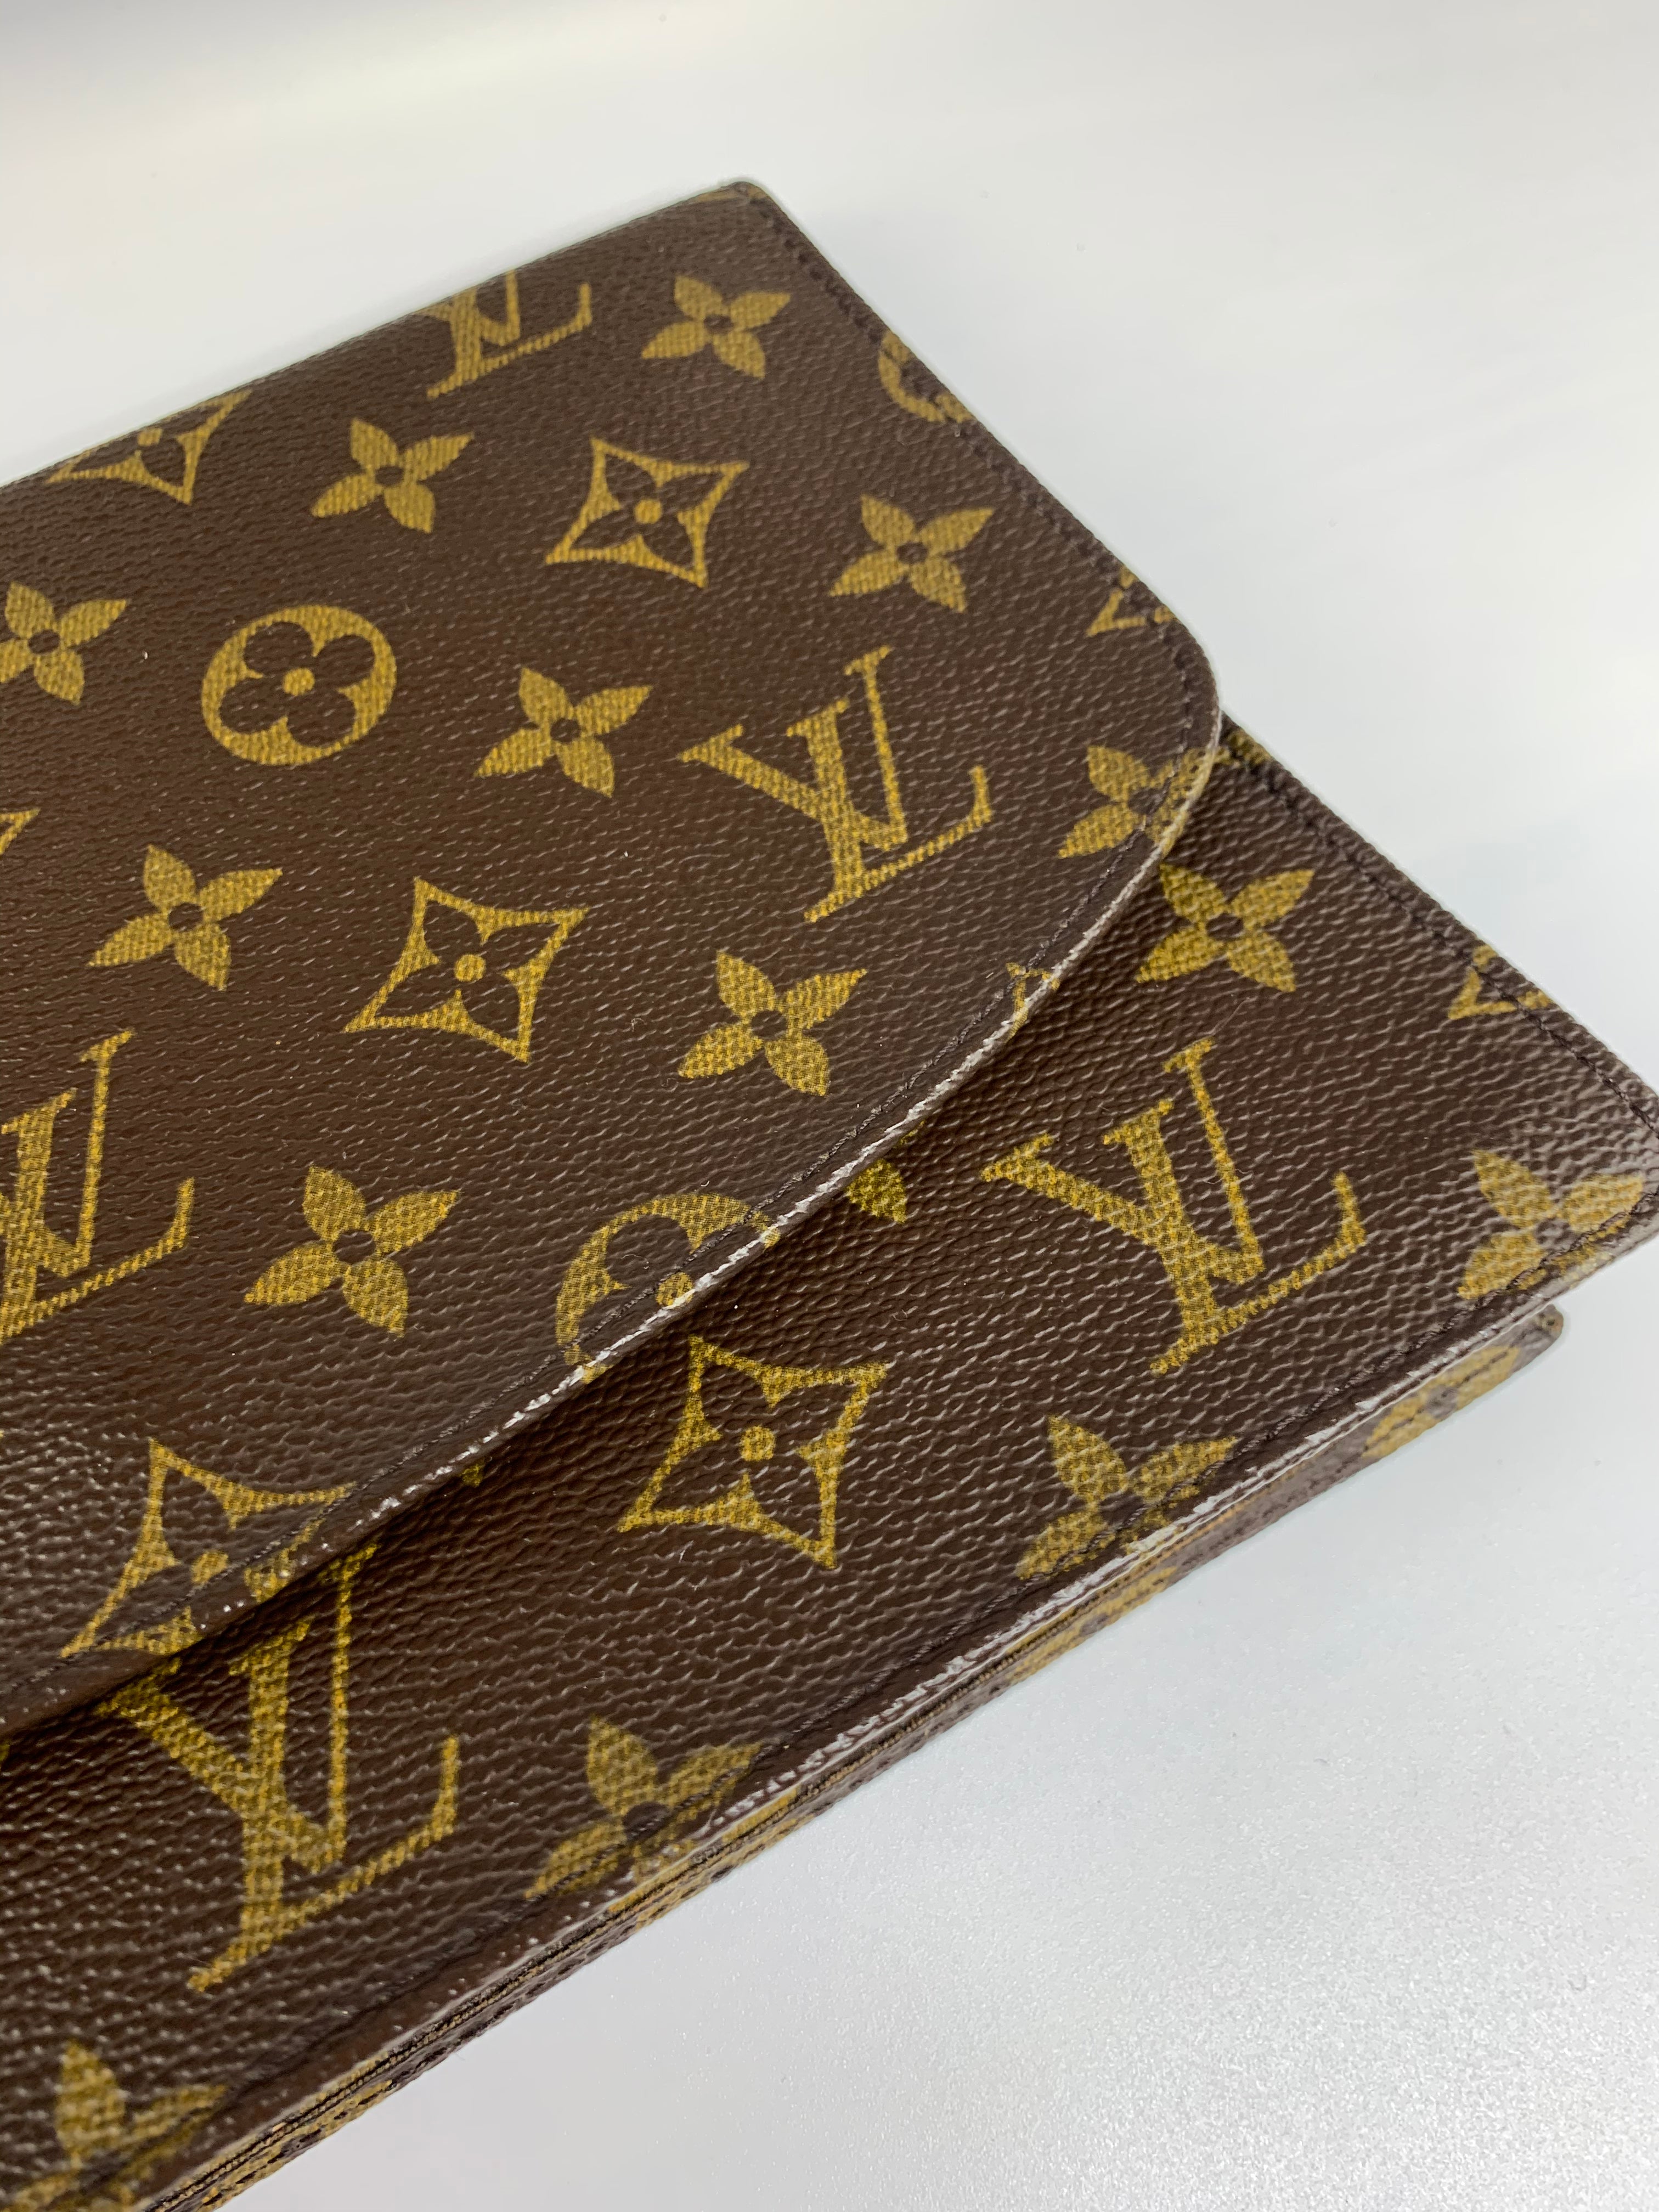 Authentic Louis Vuitton Monogram Pochette rabat 23 Clutch Bag